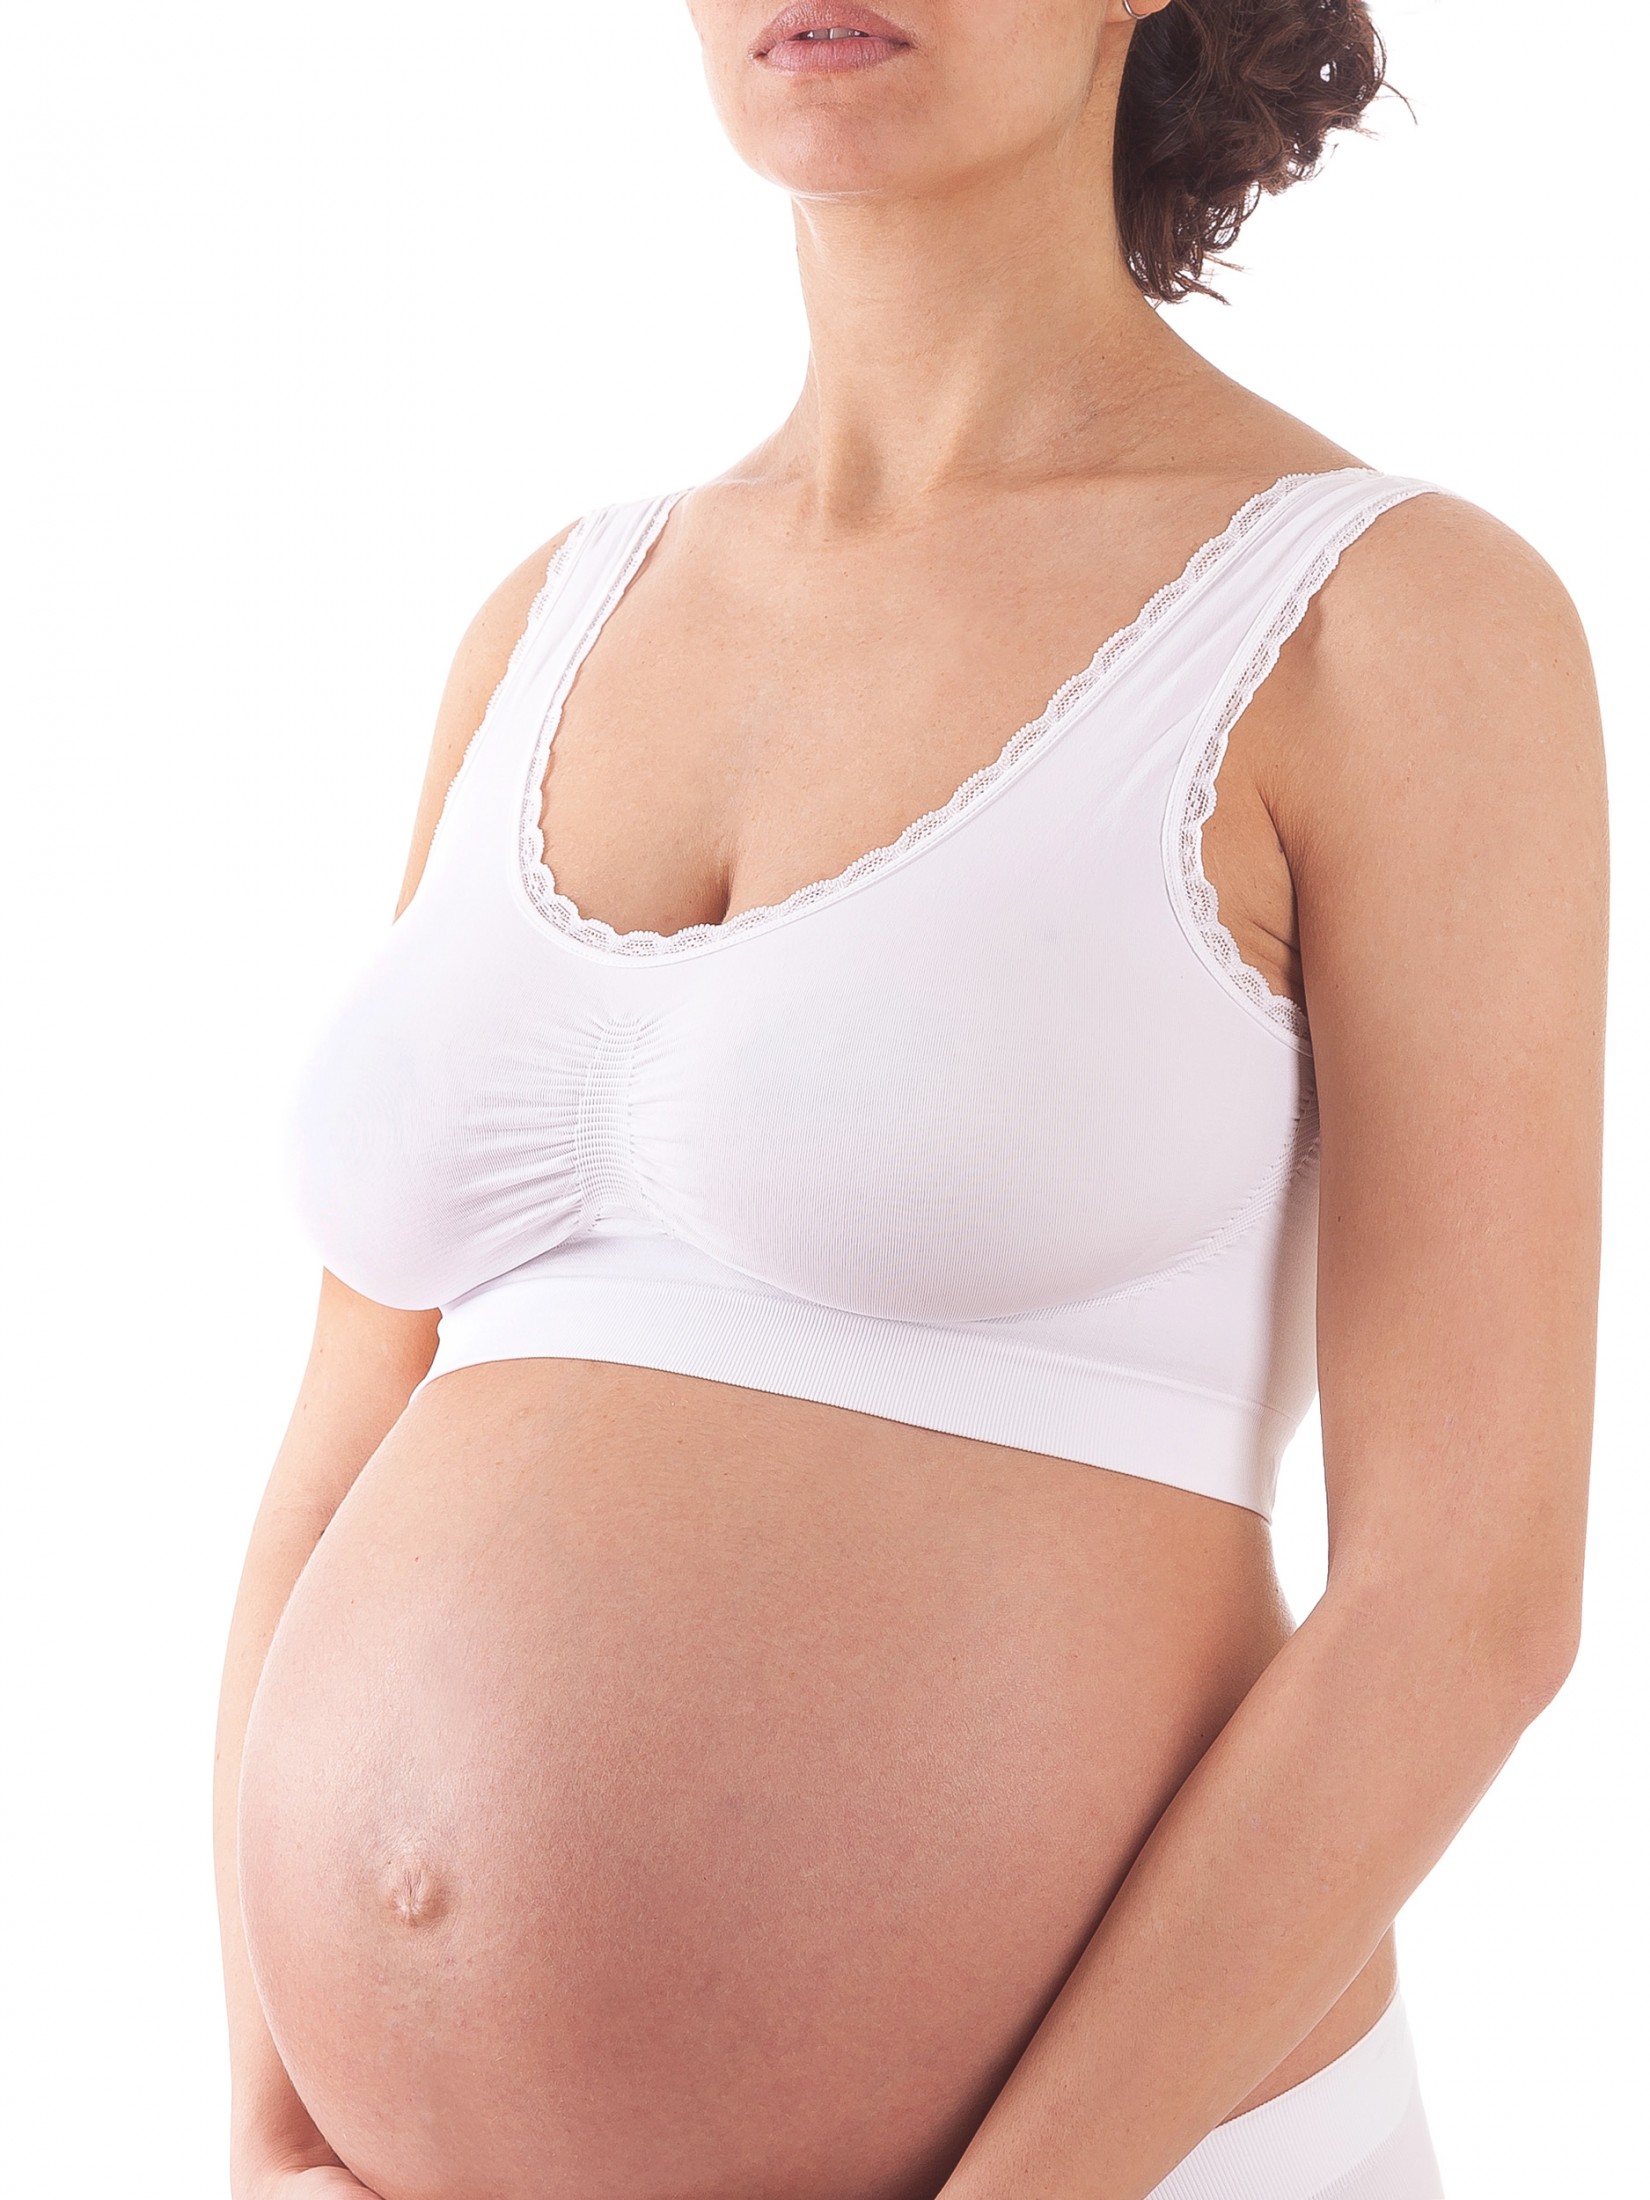 Бюстгальтер для беременных женский Bellissimo Reggiseno Top Ultra Comfort белый M/L плечевые накладки с липучкой s полумесяц белый 125x100x12 мм упак 5 пар prym